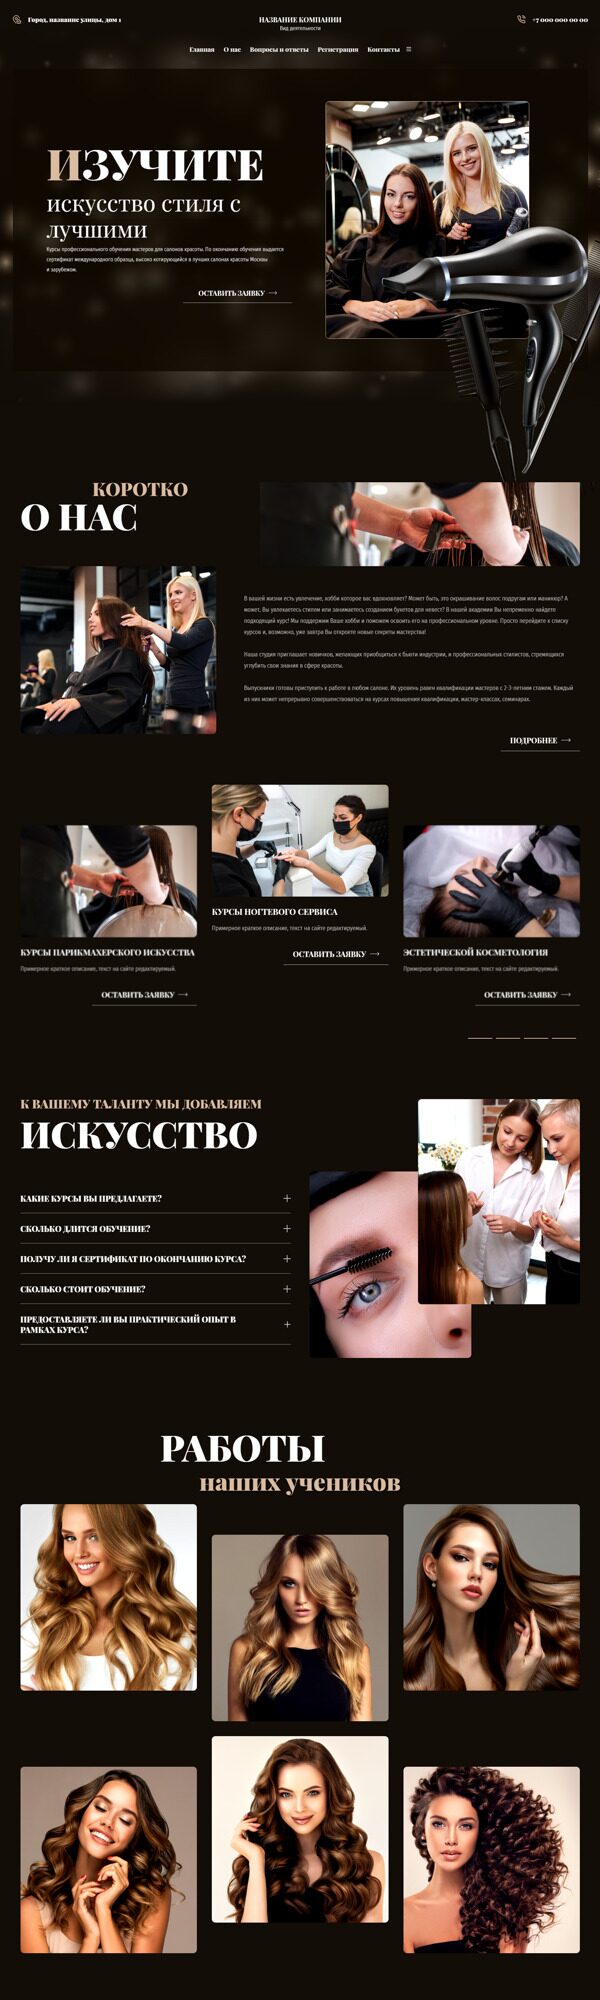 Готовый Сайт-Бизнес № 5721019 - Обучение мастеров для салонов красоты (Десктопная версия)